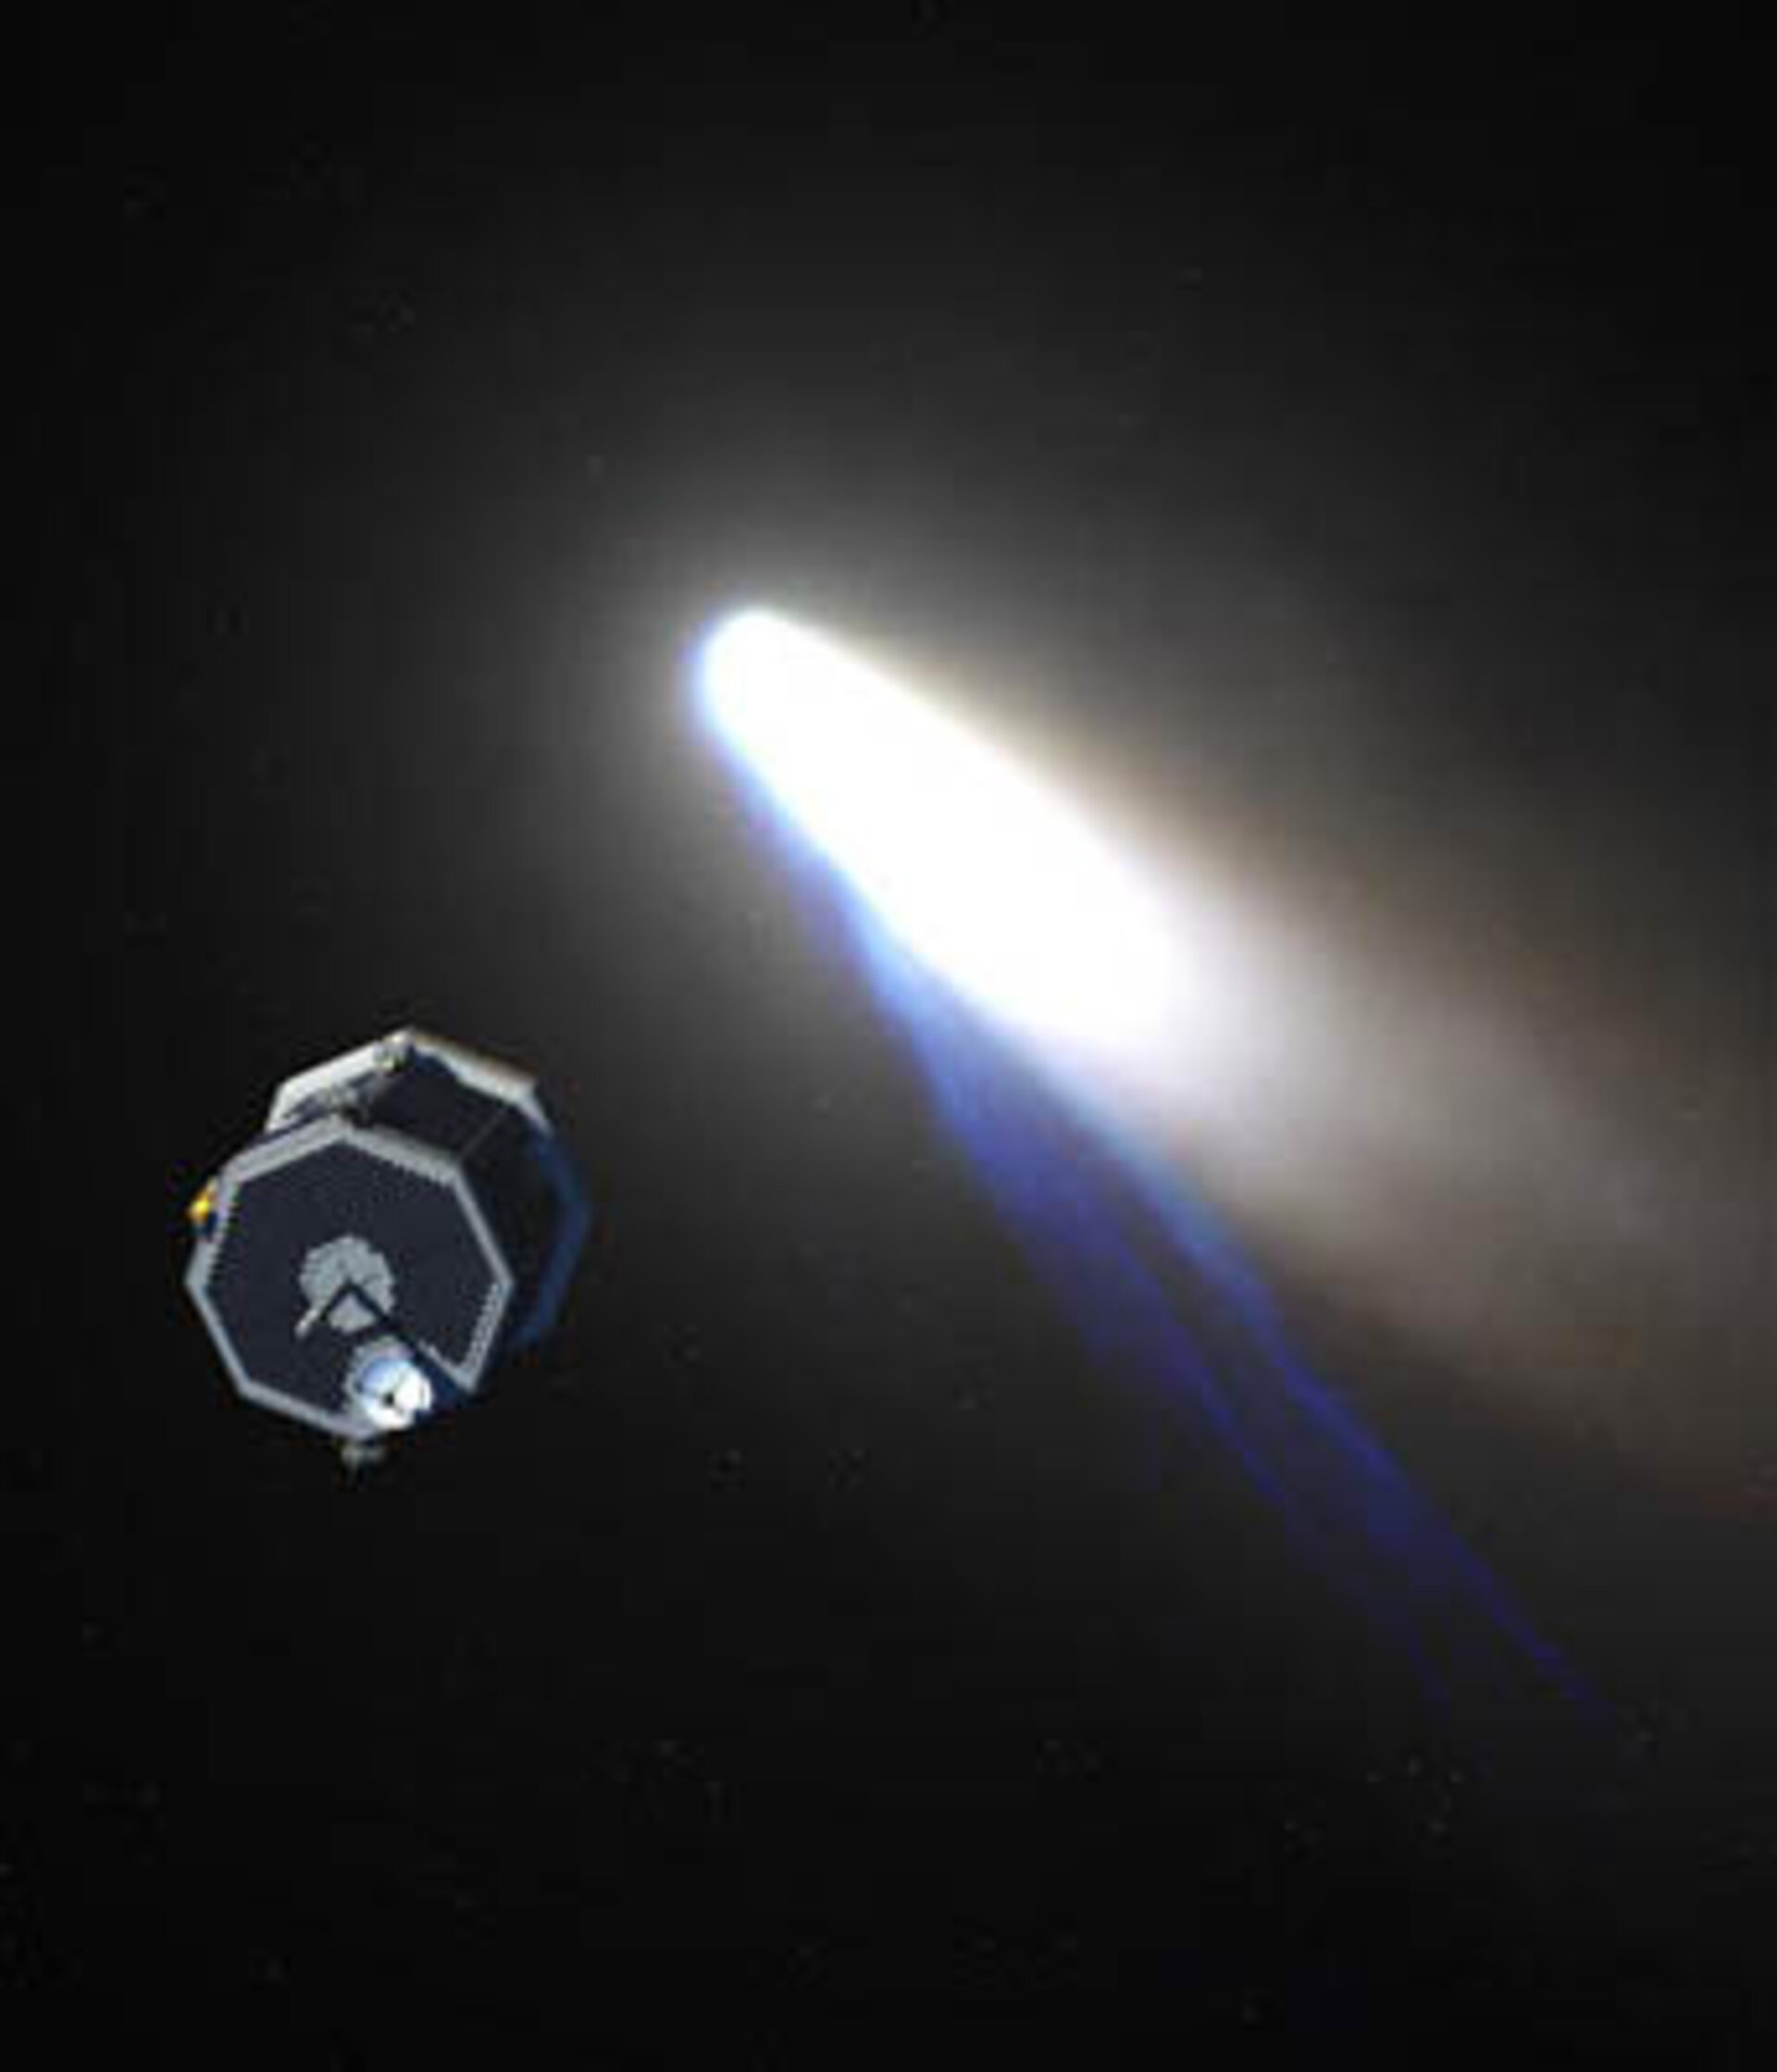 NASA's Contour spacecraft